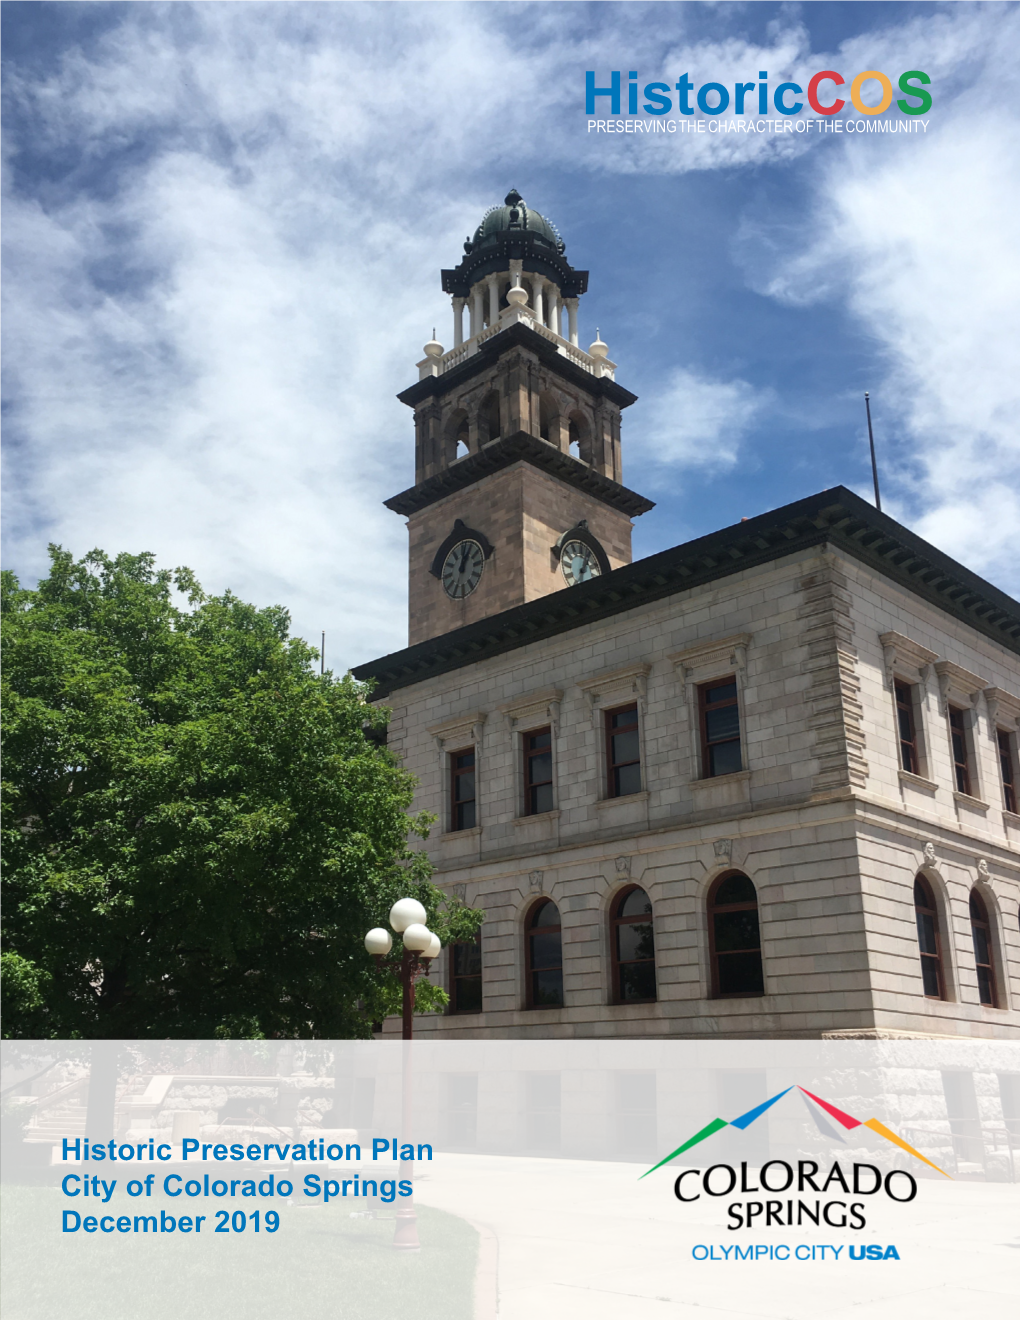 Historiccos (Colorado Springs Historic Preservation Plan)